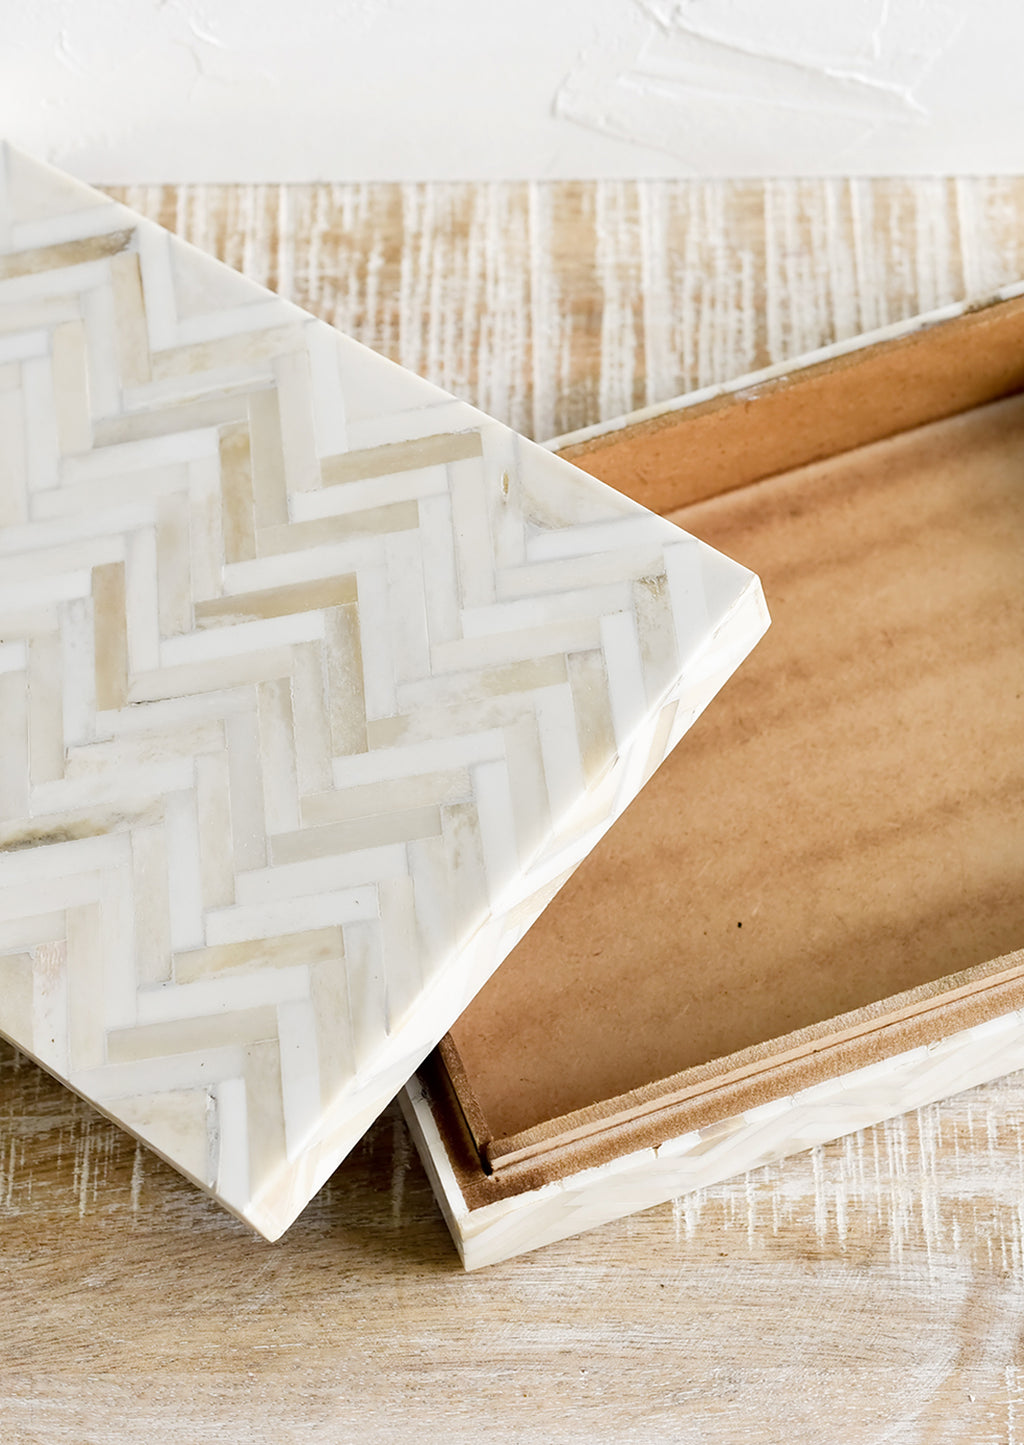 2: A rectangular storage box in cream colored herringbone pattern.